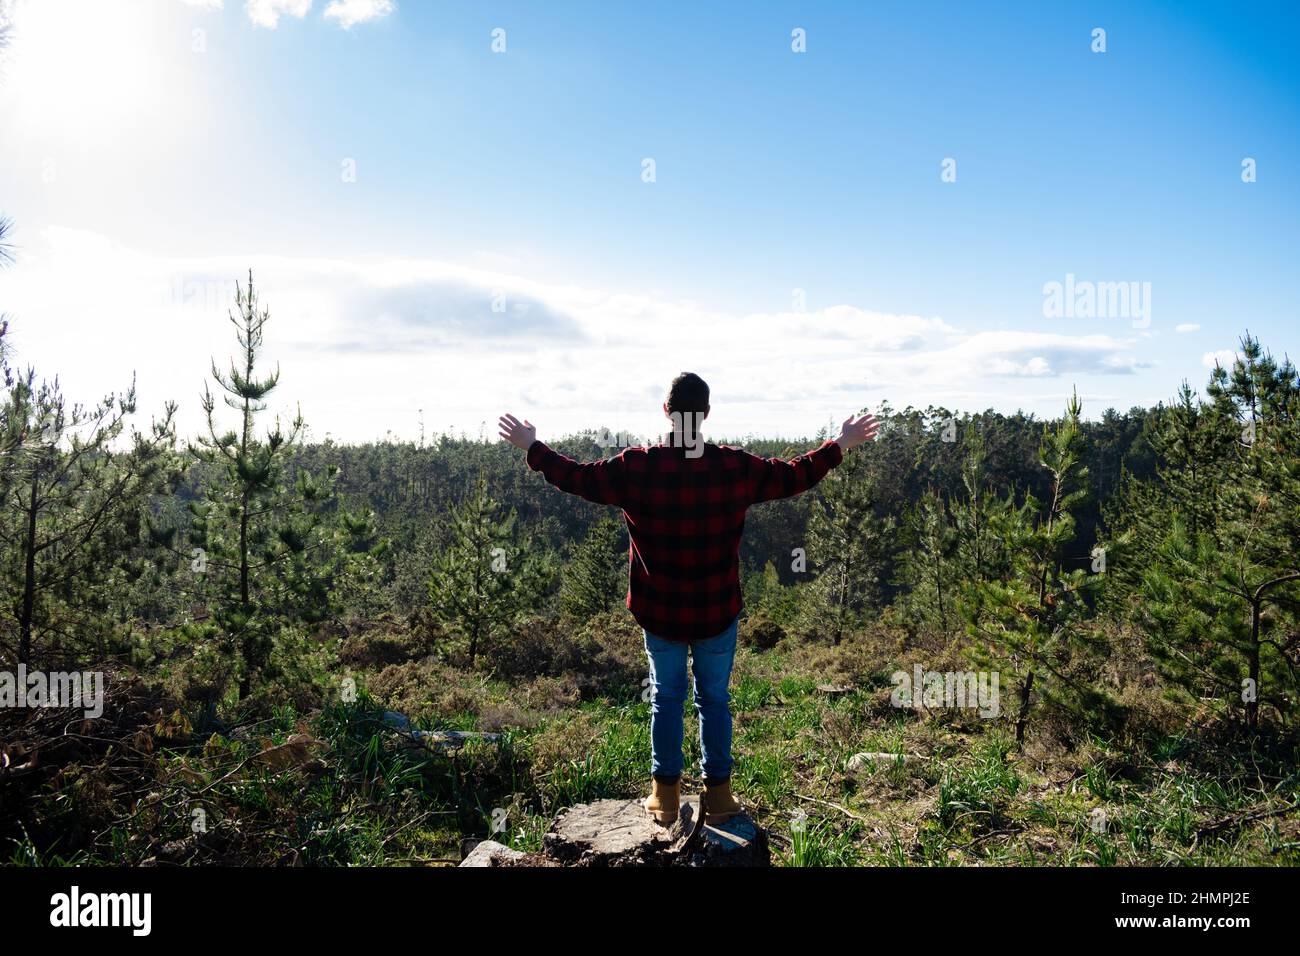 Vue arrière d'un homme debout sur une souche d'arbre dans une forêt avec ses bras étirés, Espagne Banque D'Images